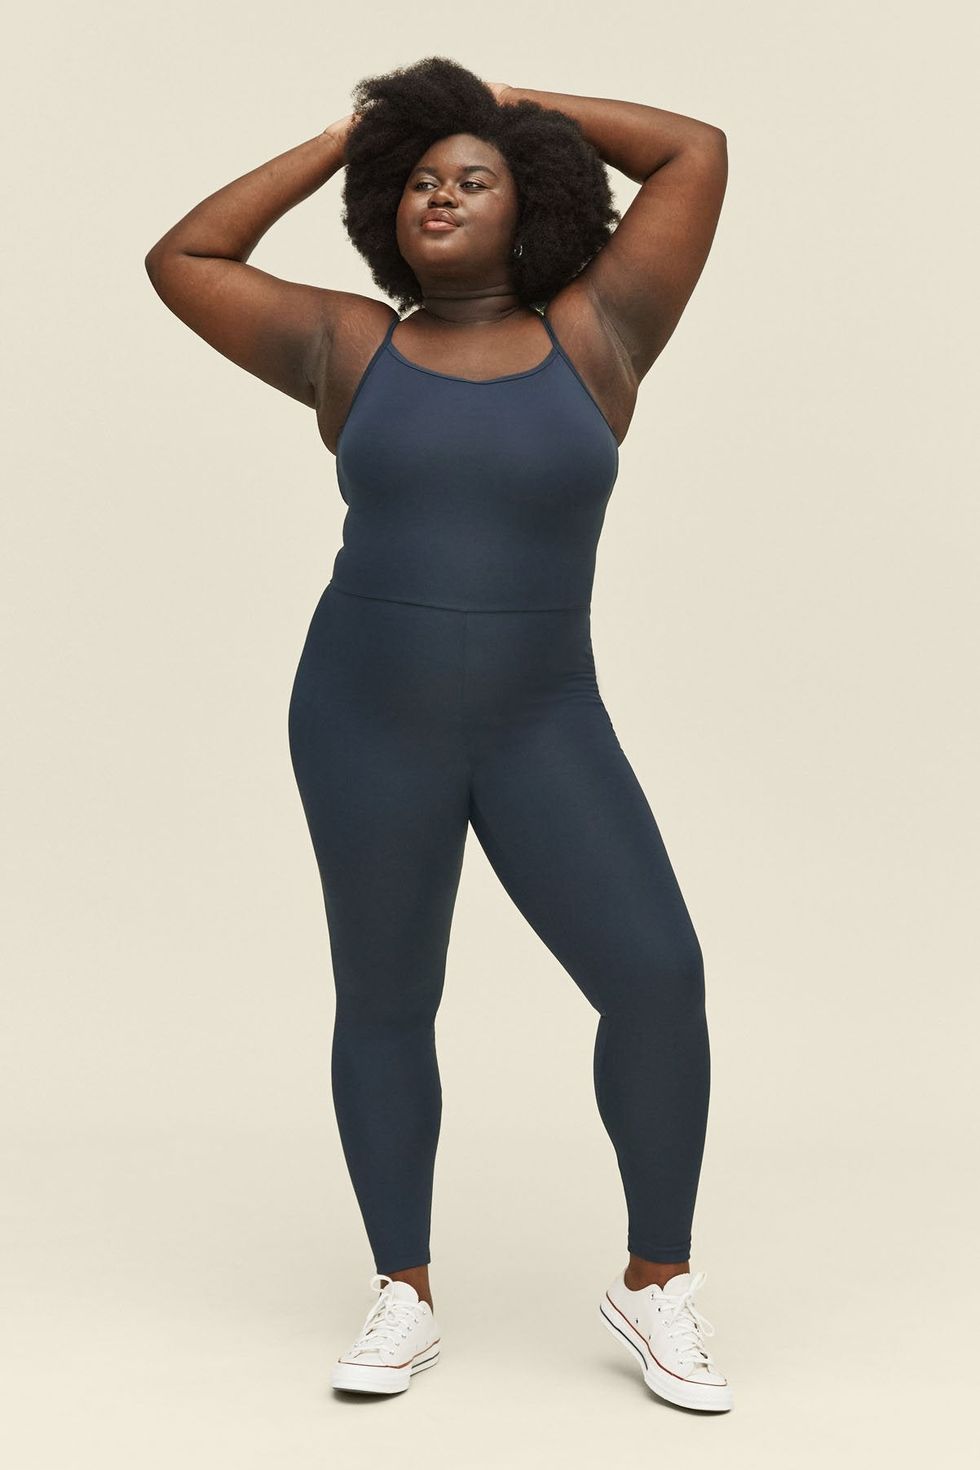 PRAETER Women's Casual Workout Clothes Suit Plus Size Yoga Clothes